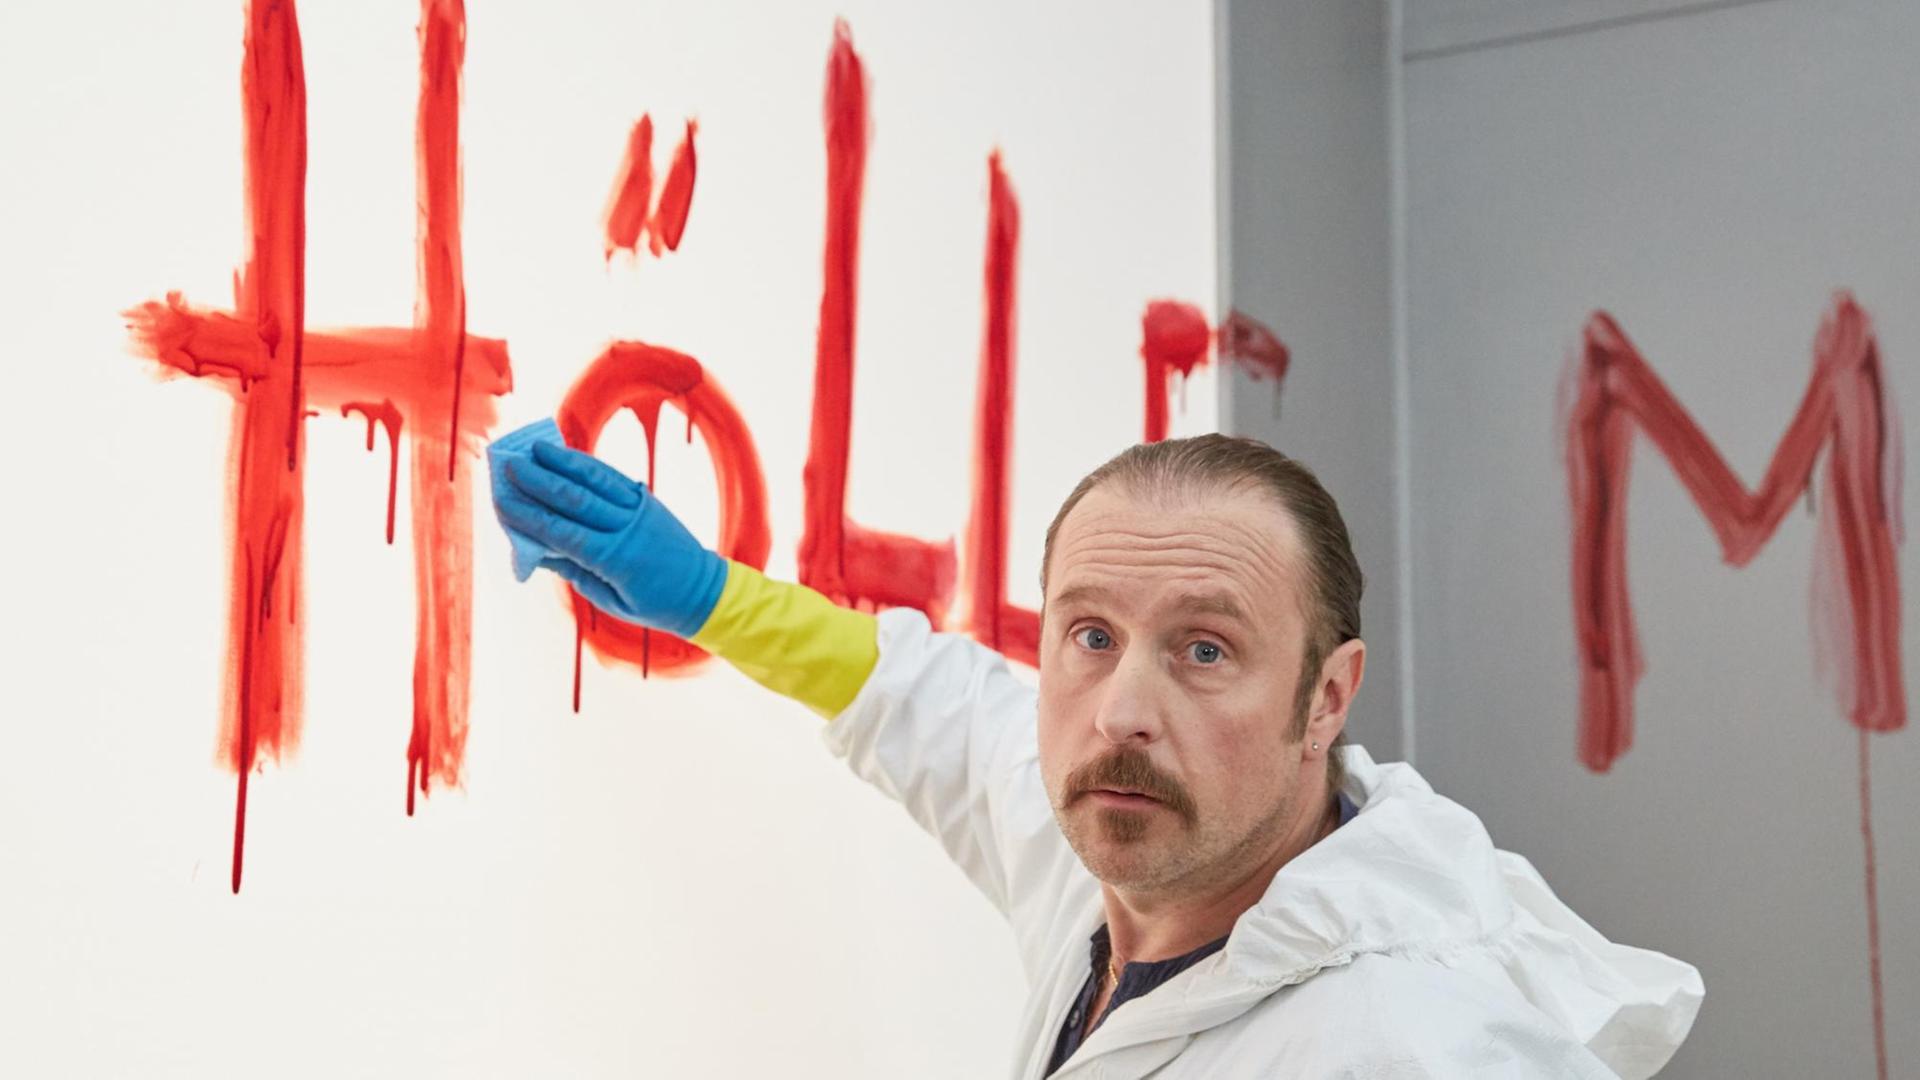 Der Schauspieler Bjarne Mädel trägt einen weißen Anzug und schrubbt das mit Blut an die Wand geschriebene Wort "Hölle"